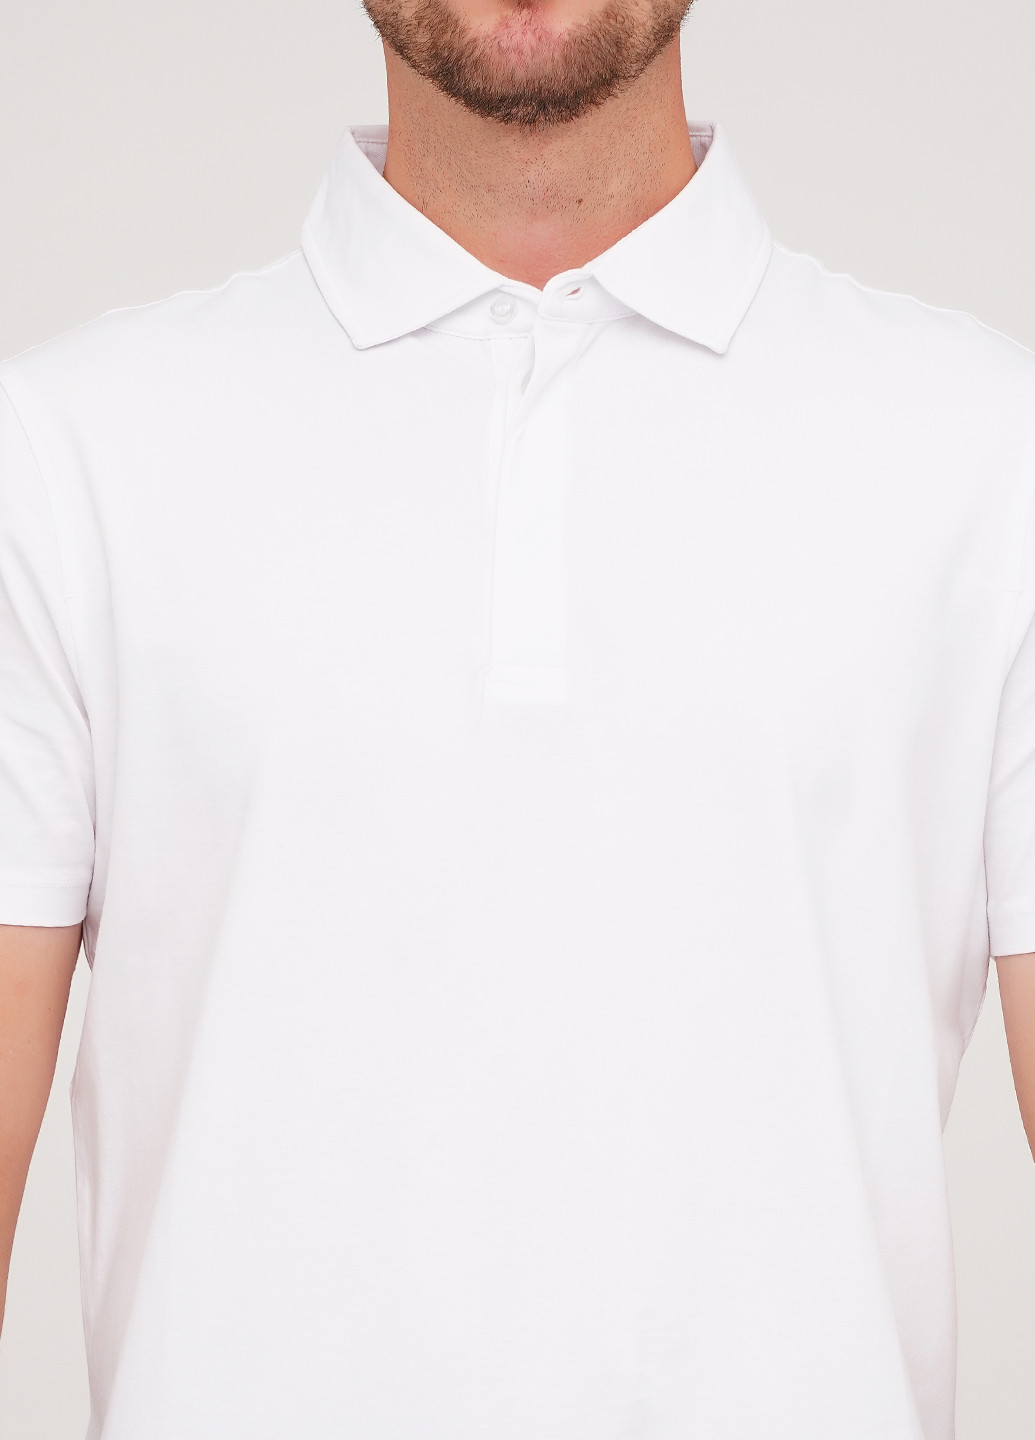 Белая футболка-поло для мужчин Strellson однотонная